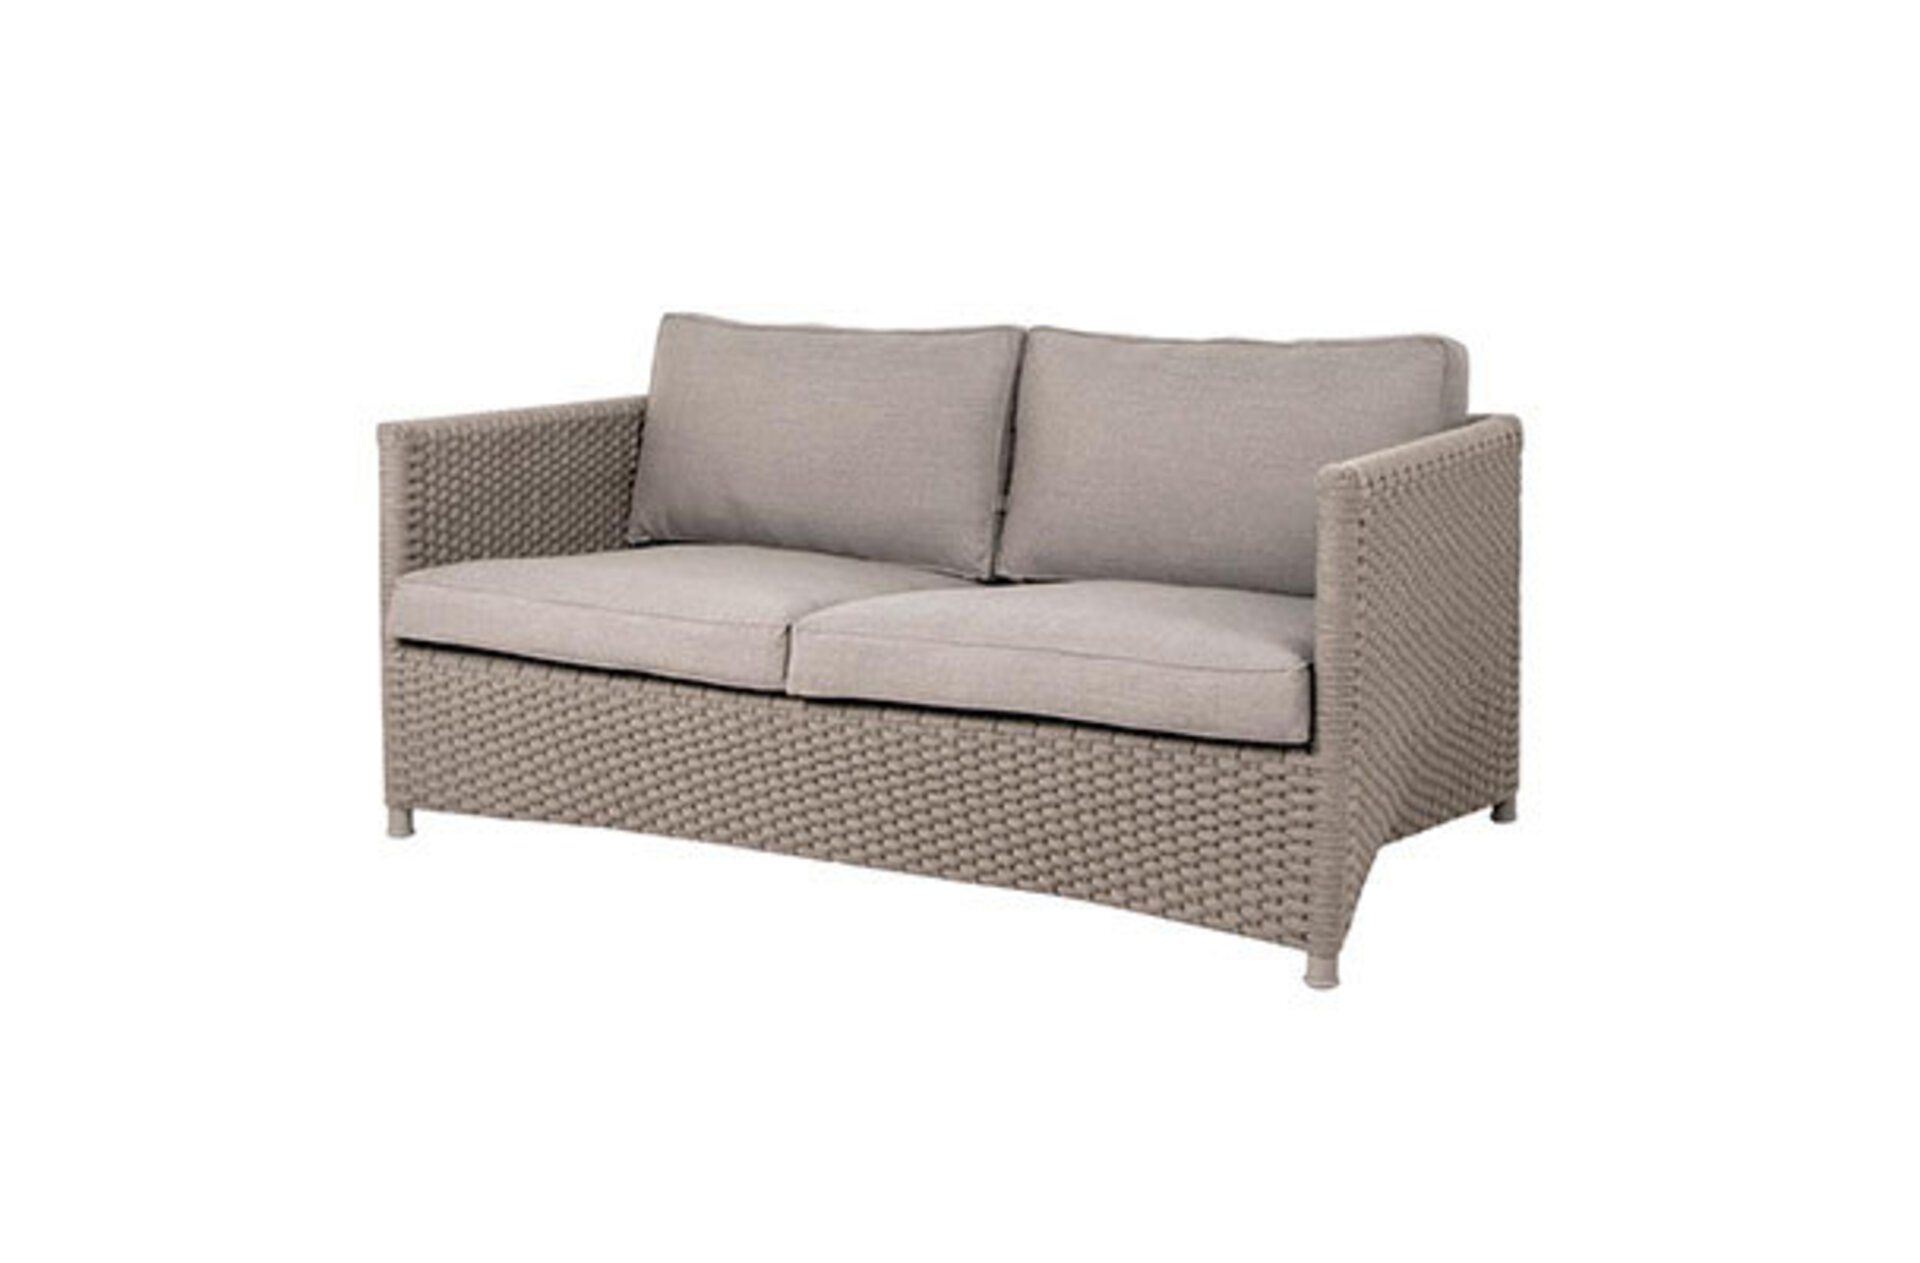 Das Diomond 2-Sitzer Sofa von Cane-line